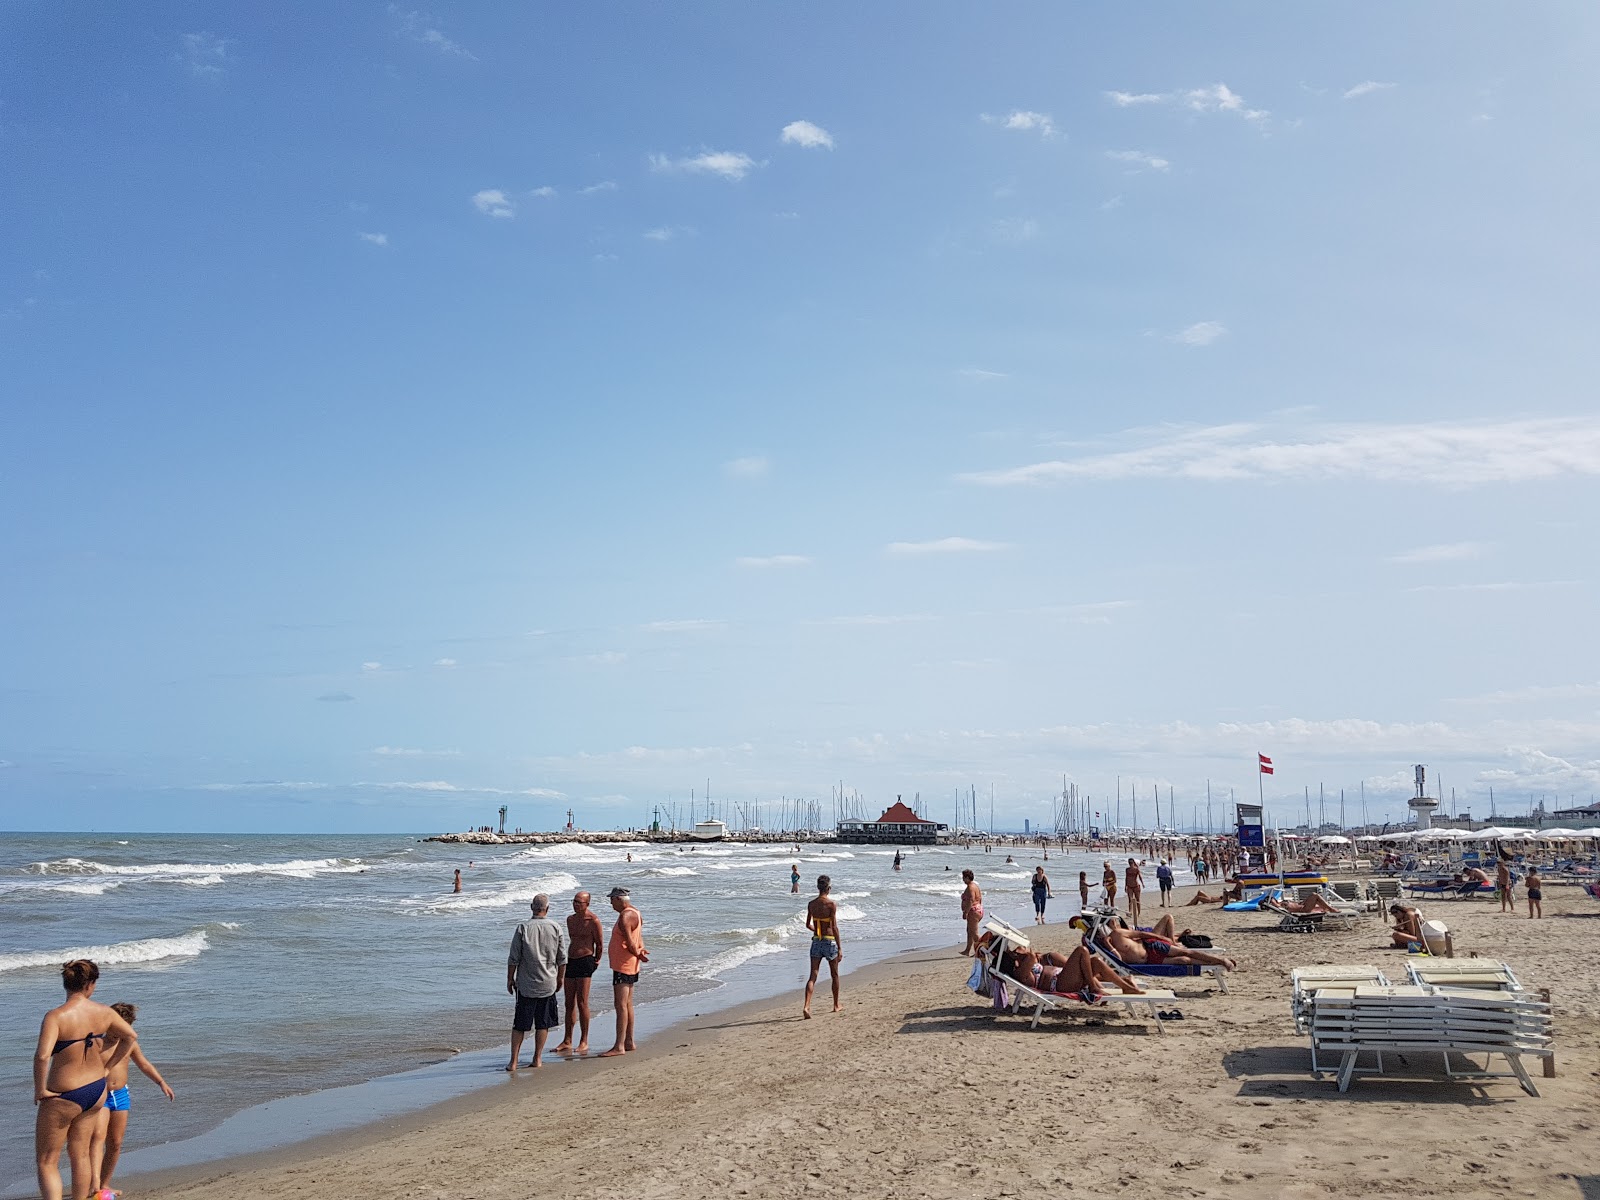 Photo of Spiaggia Milano Marittima with bright fine sand surface